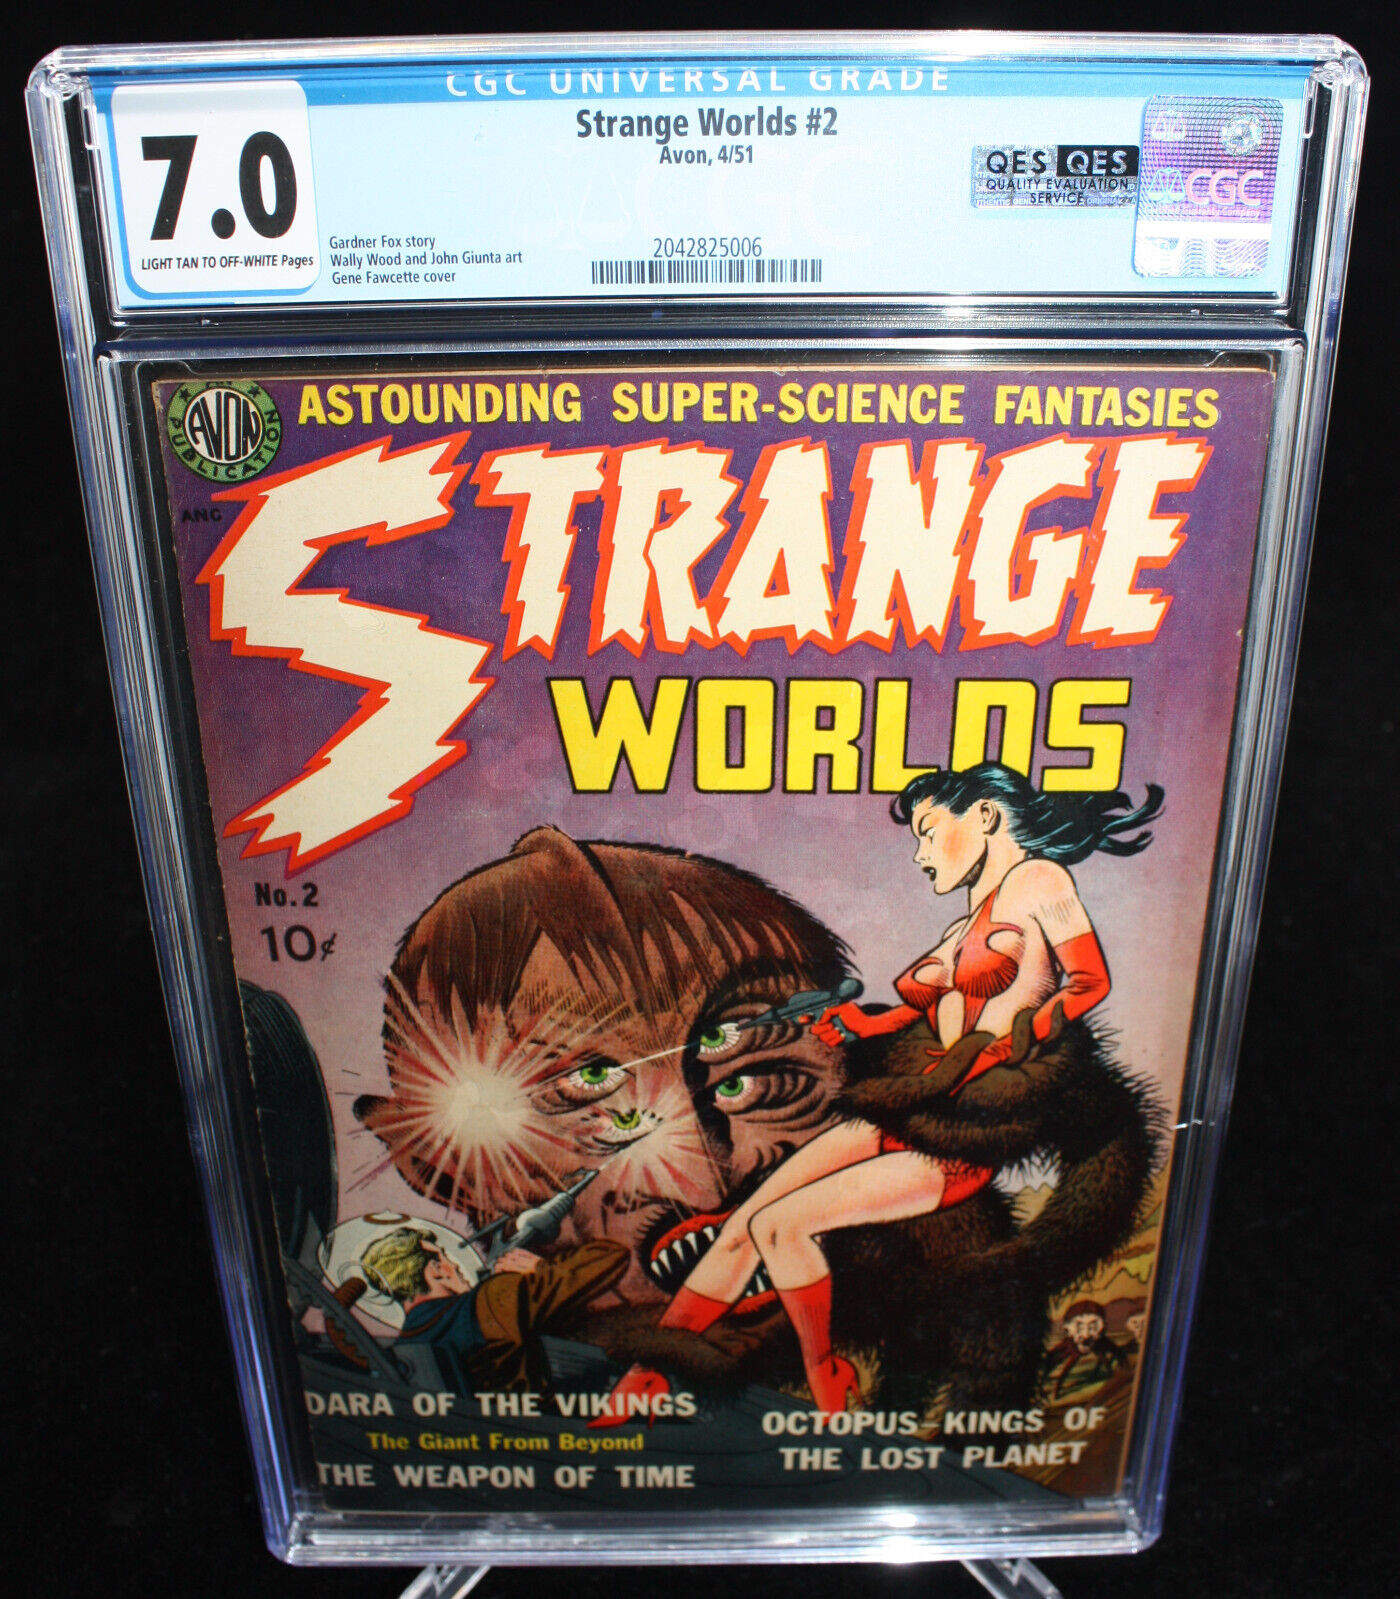 Strange Worlds #2 (CGC 7.0) Gene Fawcette Cover - 1951